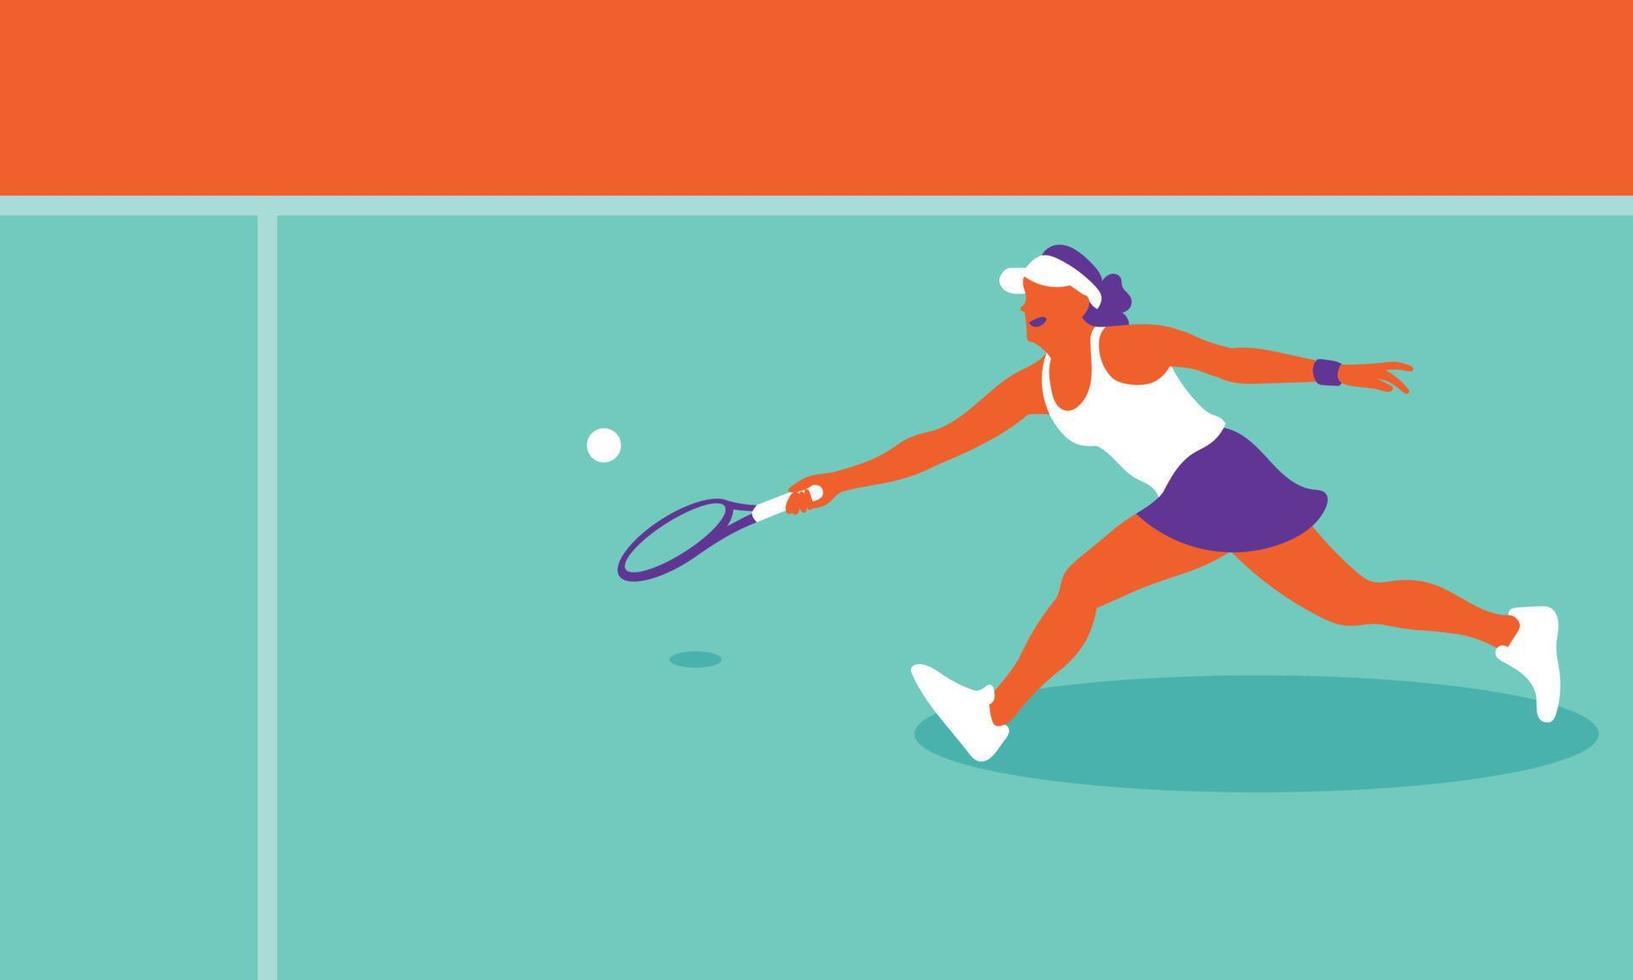 ung kvinna spelar tennis på domstolen vektor